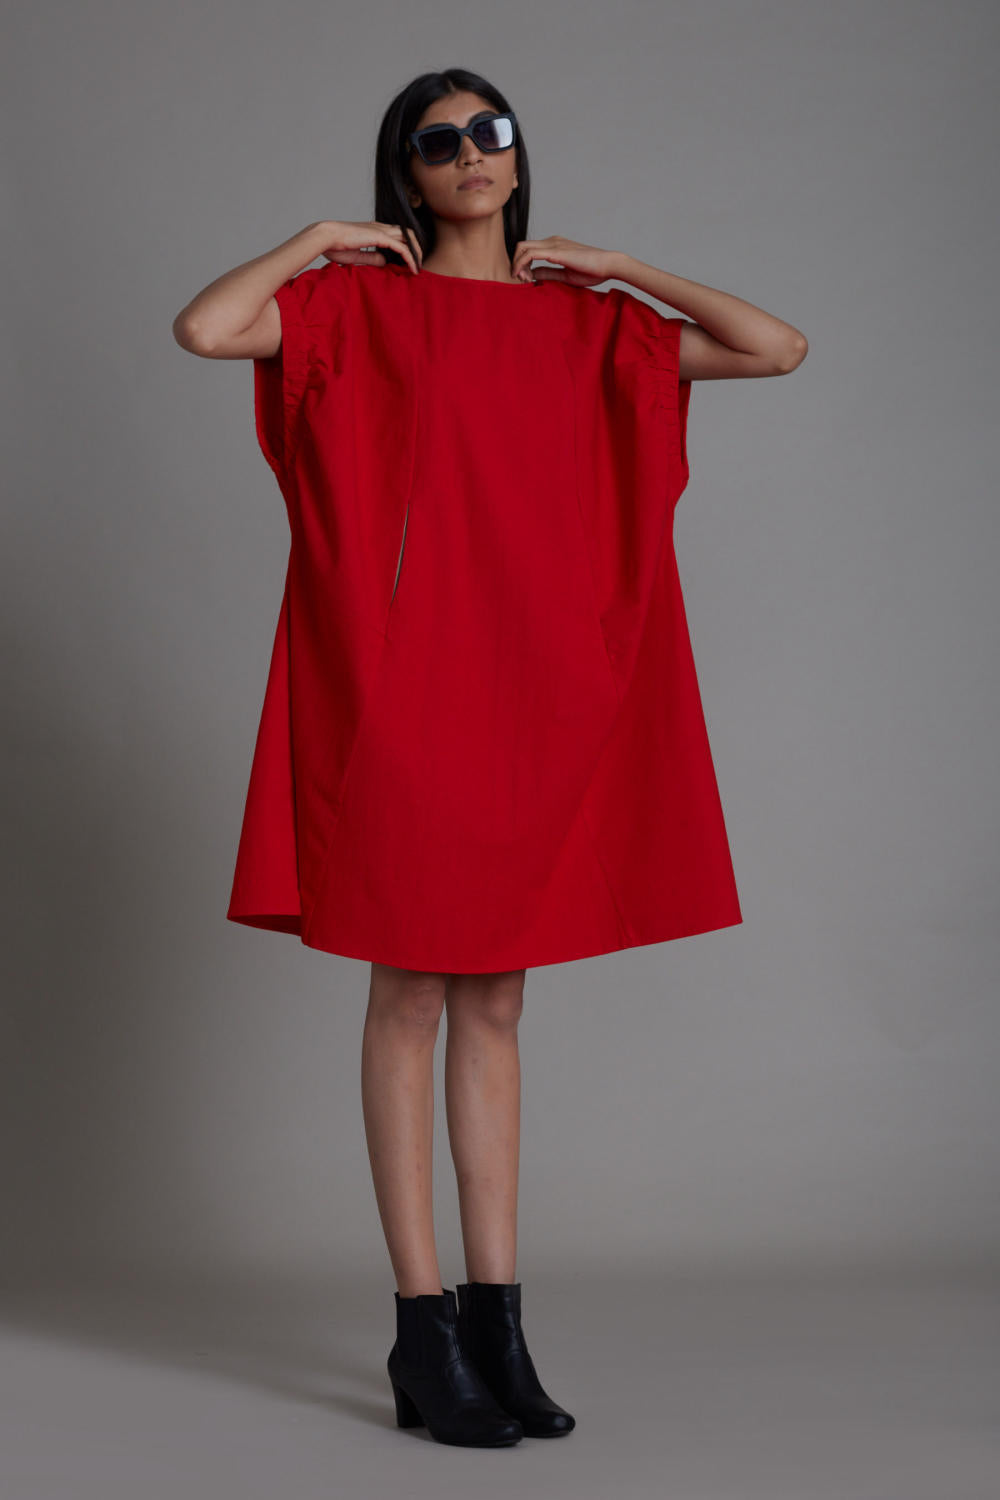 Red Pocket Dress